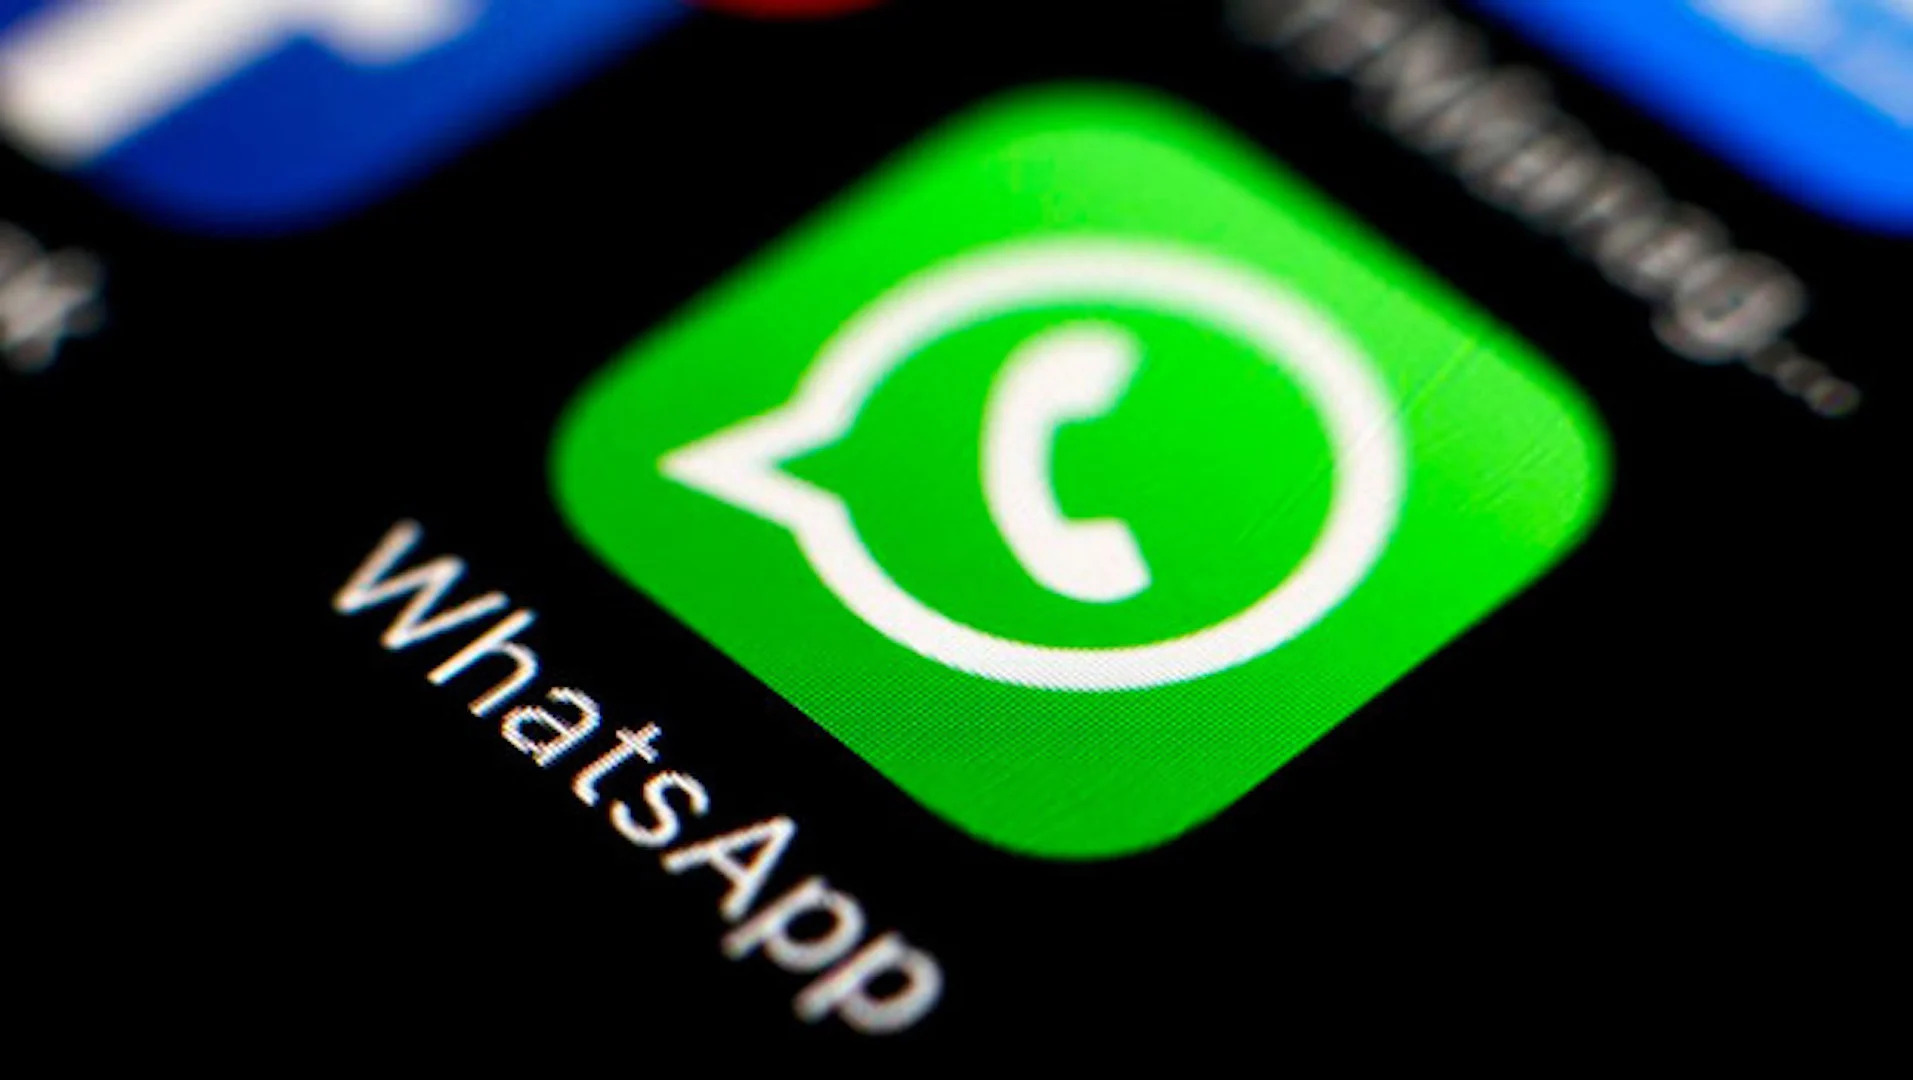 WhatsApp agora permite selecionar texto de imagens em aparelhos iOS